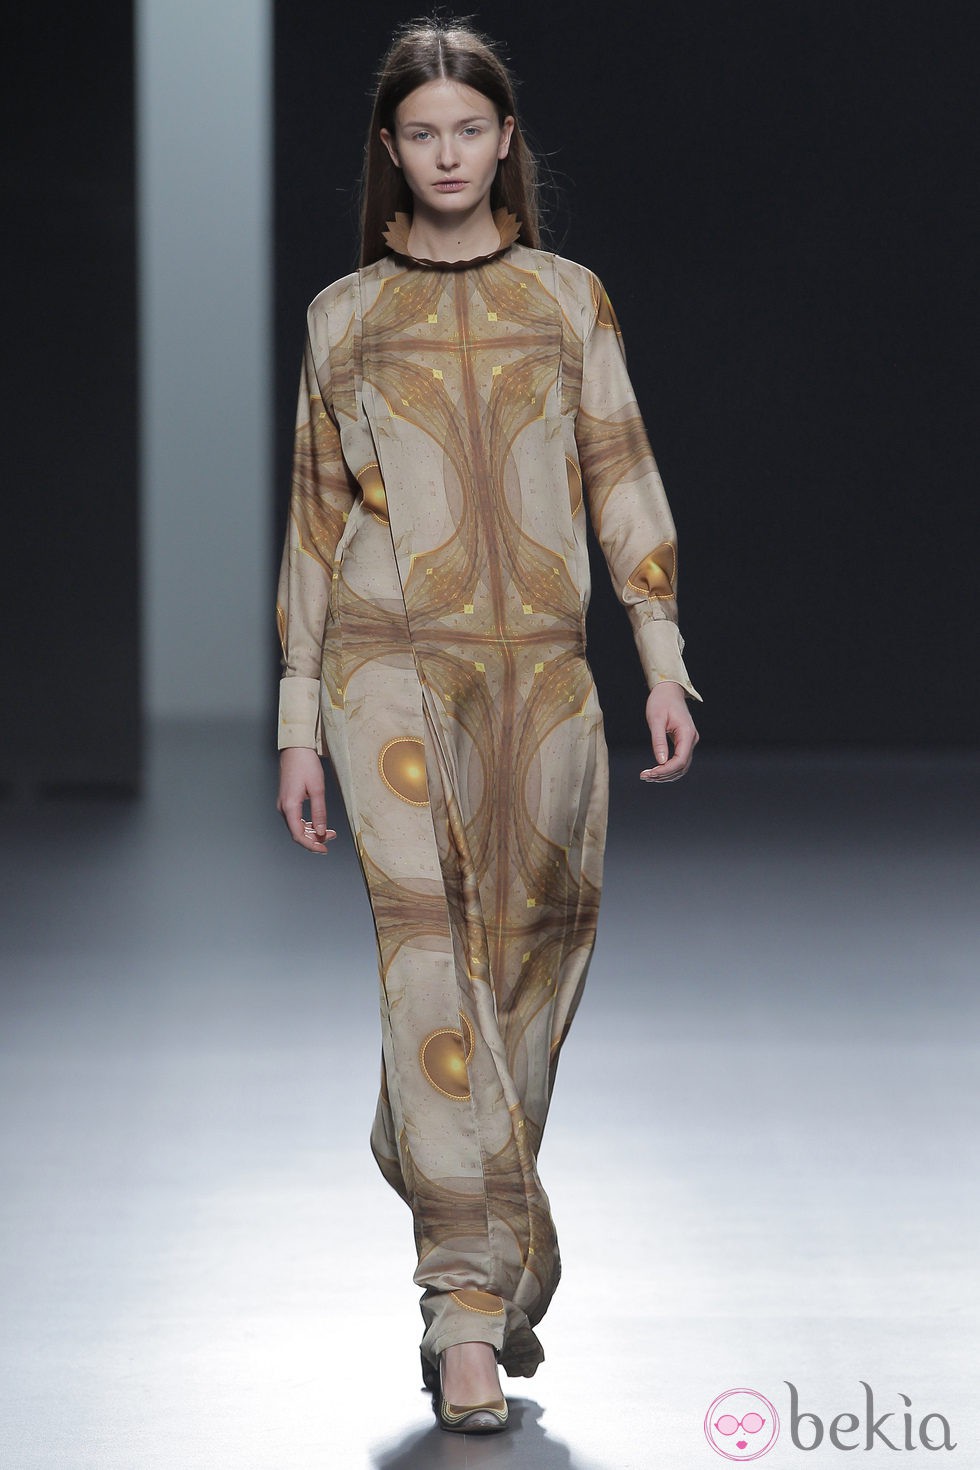 Vestido estampado de la colección otoño/invierno 2013/2014 de Martín Lamothe en Madrid Fashion Week